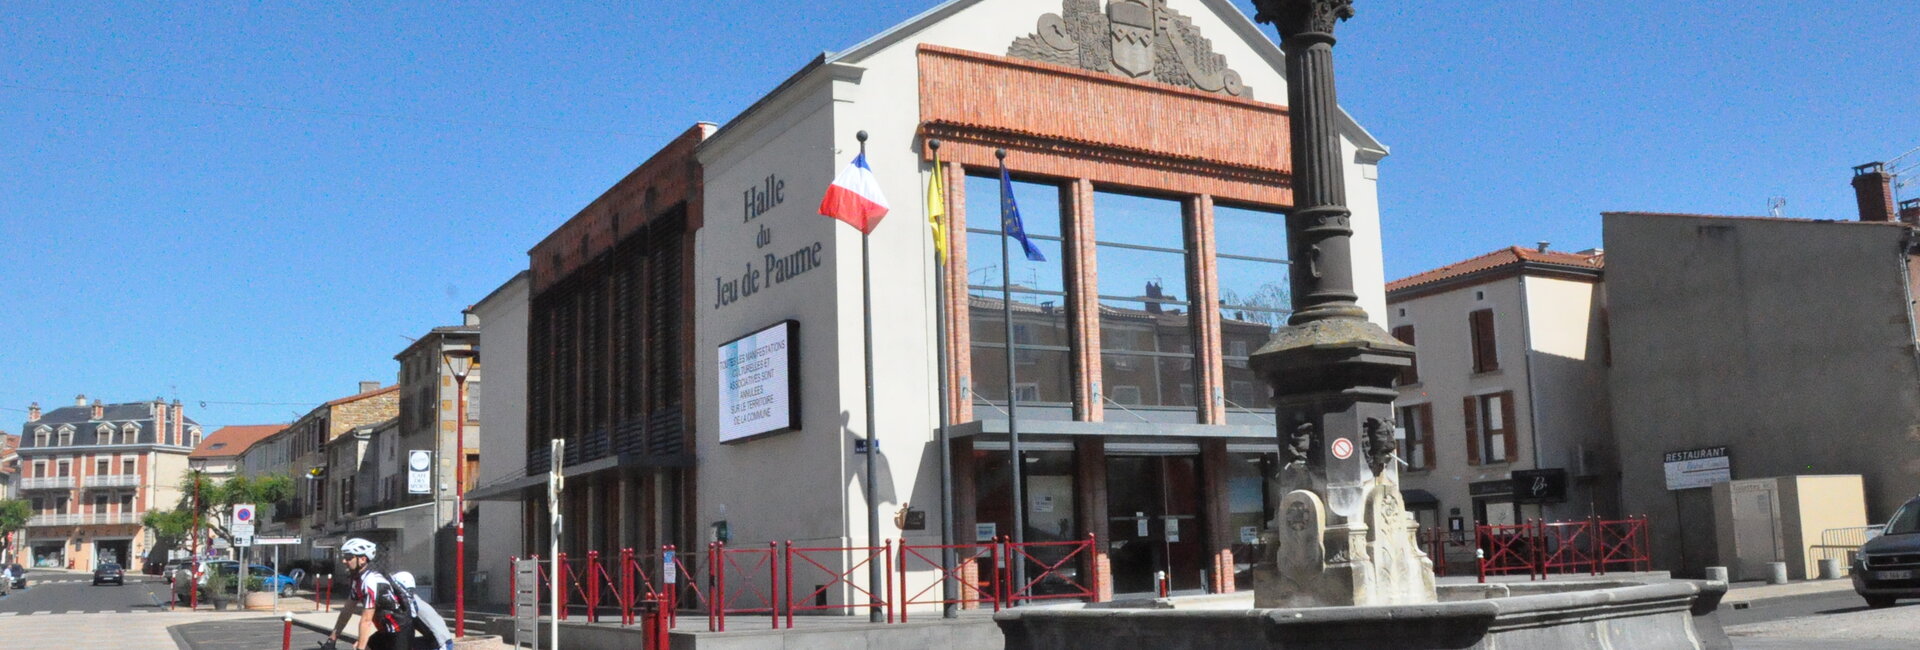 Contact de la Mairie de Vic le Comte (63) Puy-de-Dôme Auvergne-Rhône-Alpes